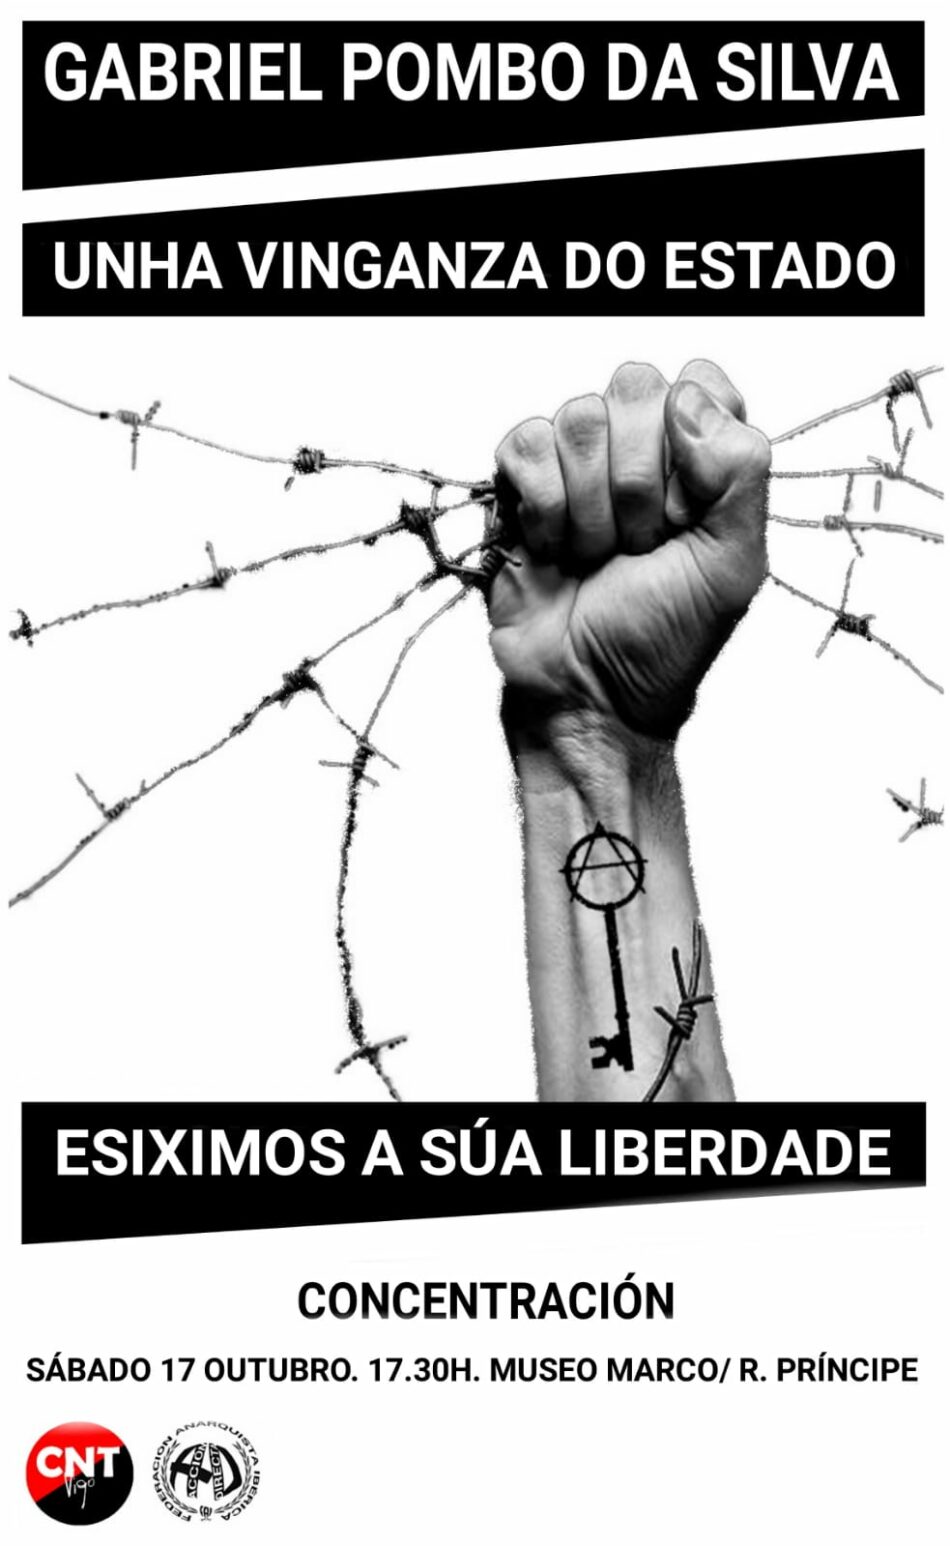 CNT Vigo convoca concentración en apoyo a Gabriel Pombo Da Silva: «Libertade Pombo»